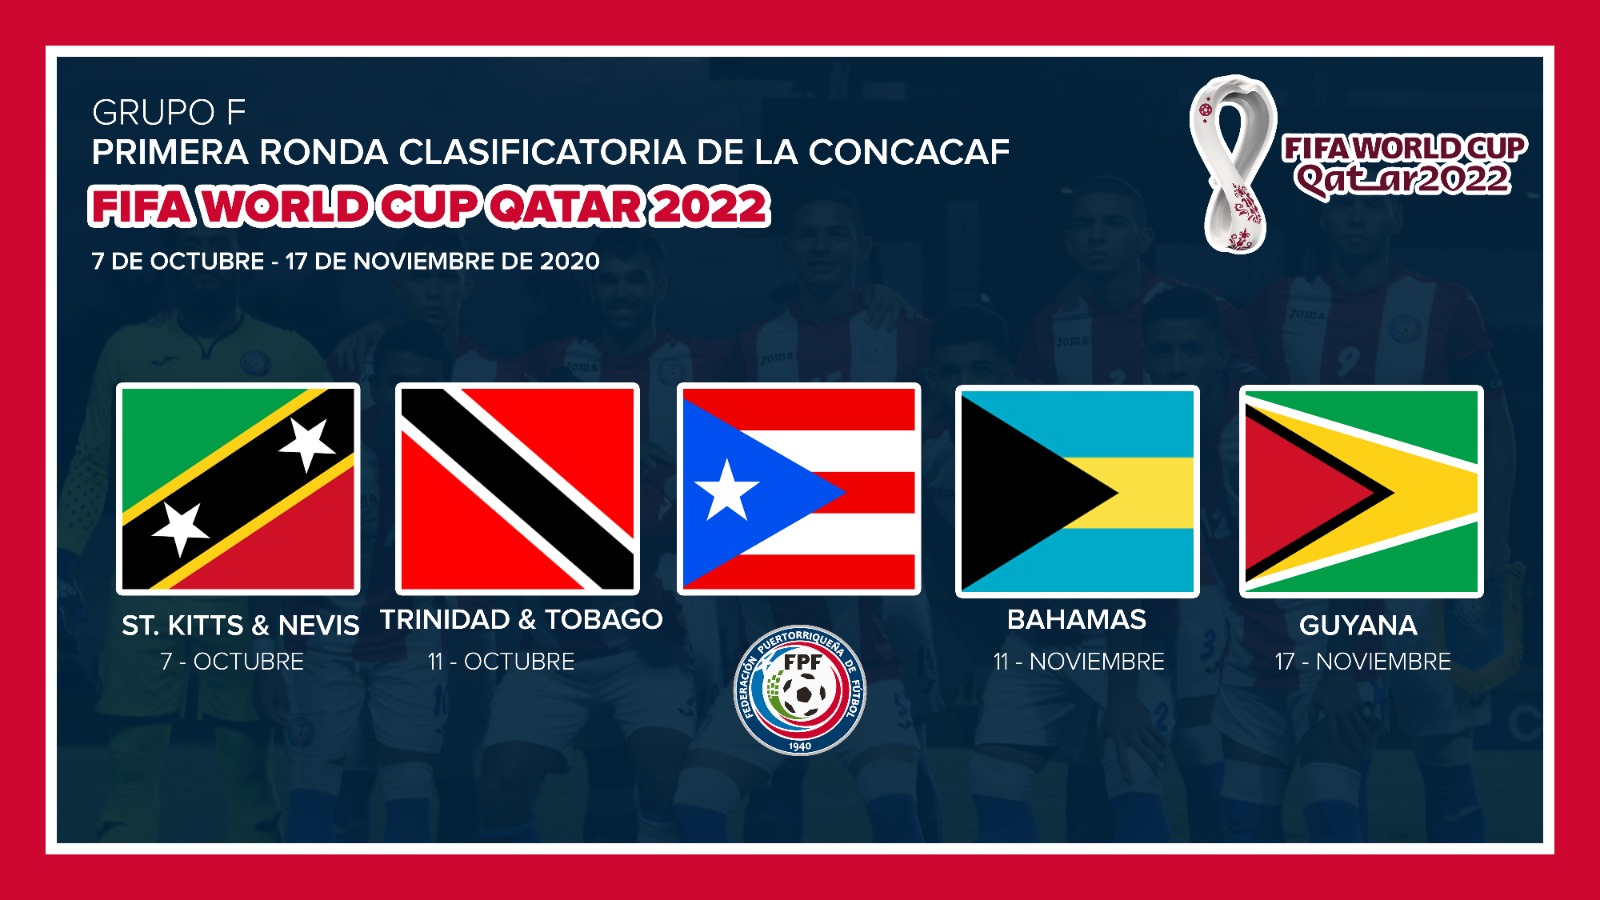 Puerto Rico pasa a primera ronda clasificatoria de la Copa Mundial FIFA